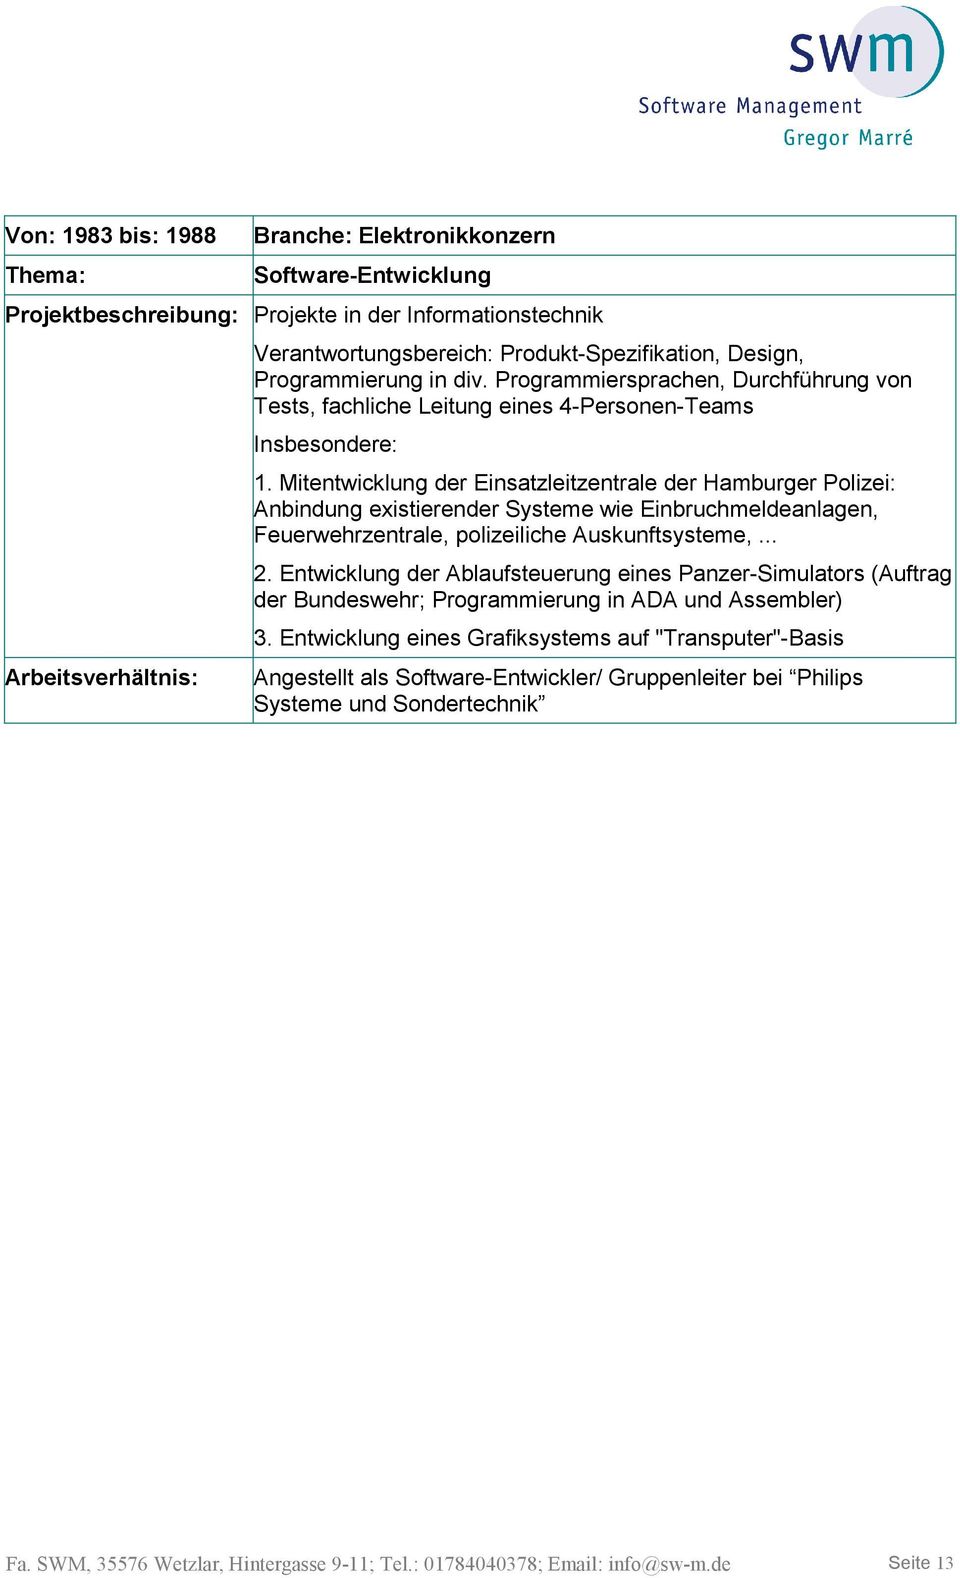 Mitentwicklung der Einsatzleitzentrale der Hamburger Polizei: Anbindung existierender Systeme wie Einbruchmeldeanlagen, Feuerwehrzentrale, polizeiliche Auskunftsysteme,... 2.